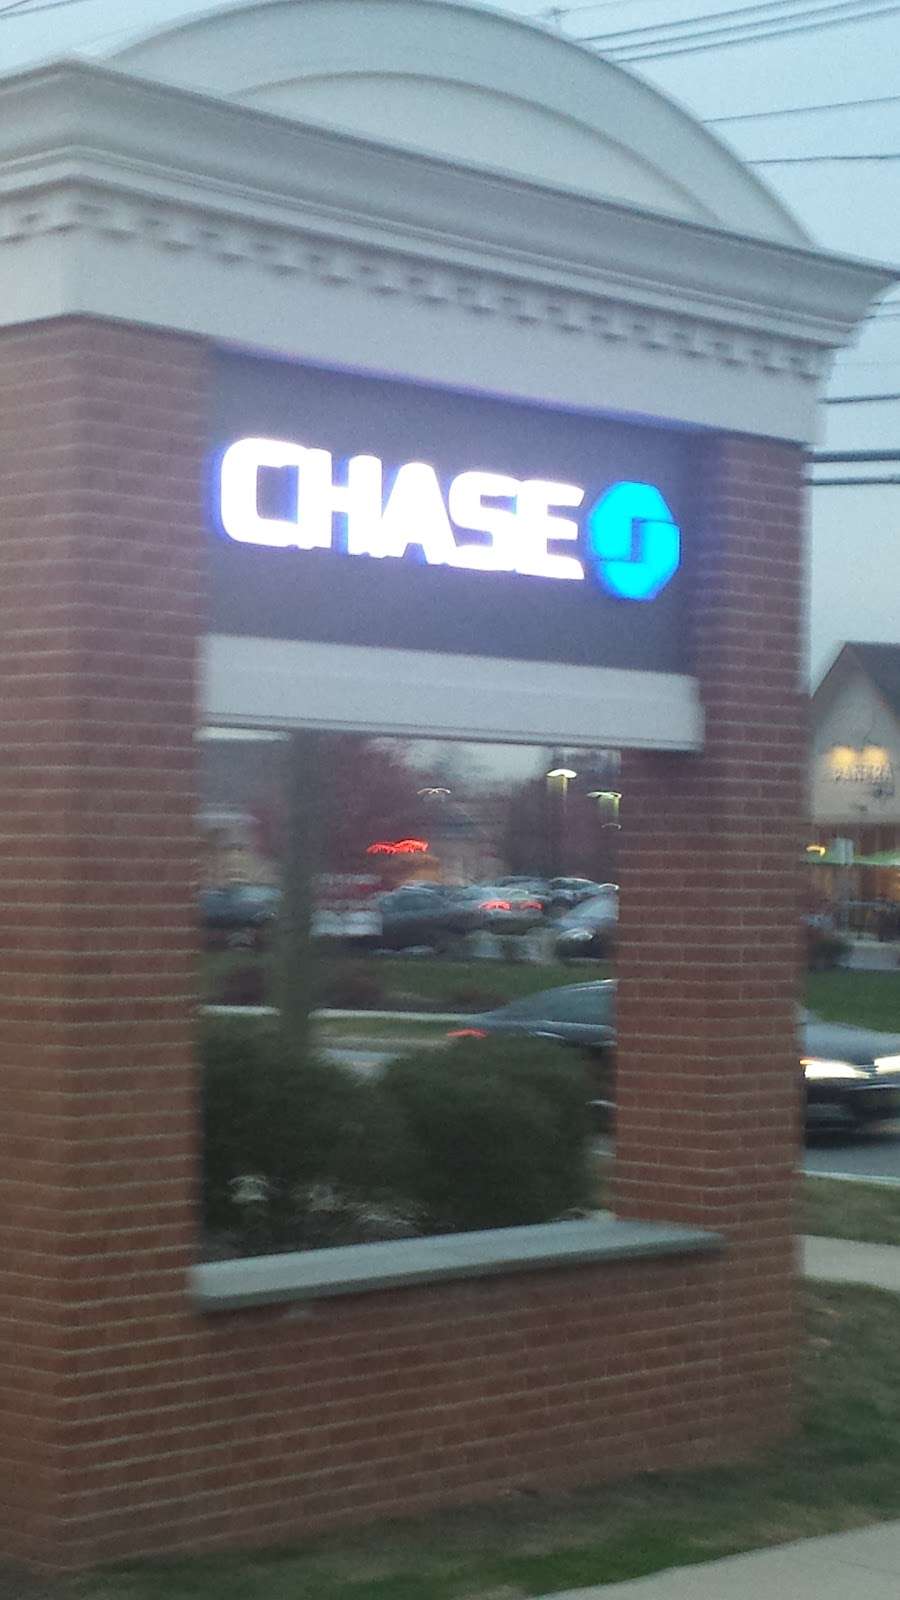 Chase Bank | 460 Elizabeth Ave, Somerset, NJ 08873, USA | Phone: (732) 356-5819